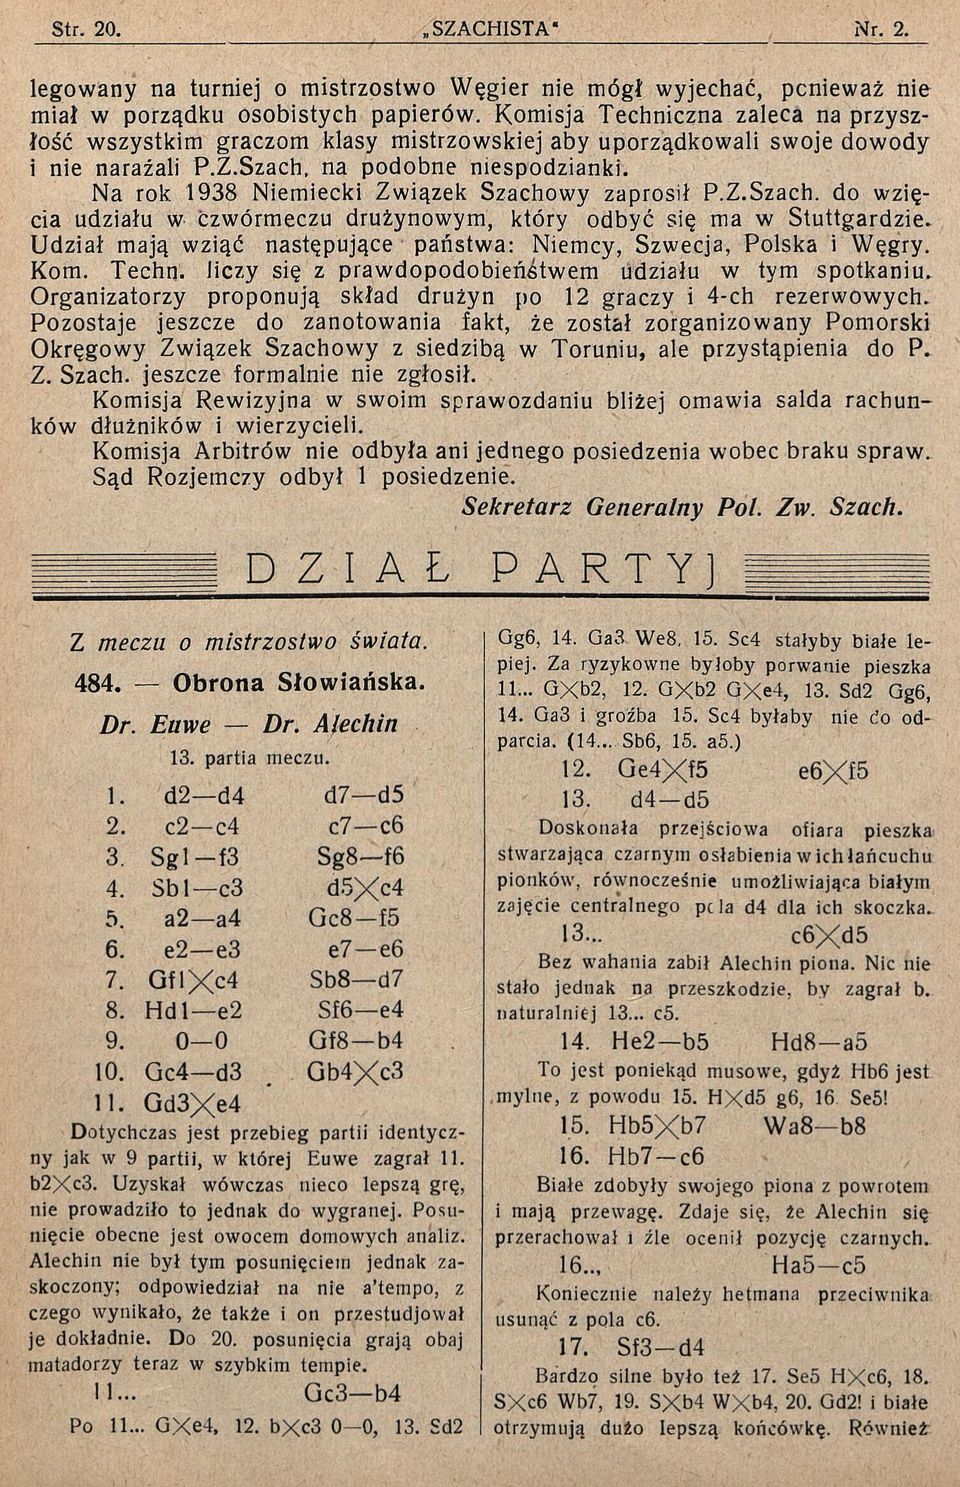 Na rok 1938 Niemiecki Związek Szachowy zaprosił P.Z.Szach. do wzięcia udziału w ćzwórmeczu drużynowym, który odbyć się ma w Stuttgardzie.